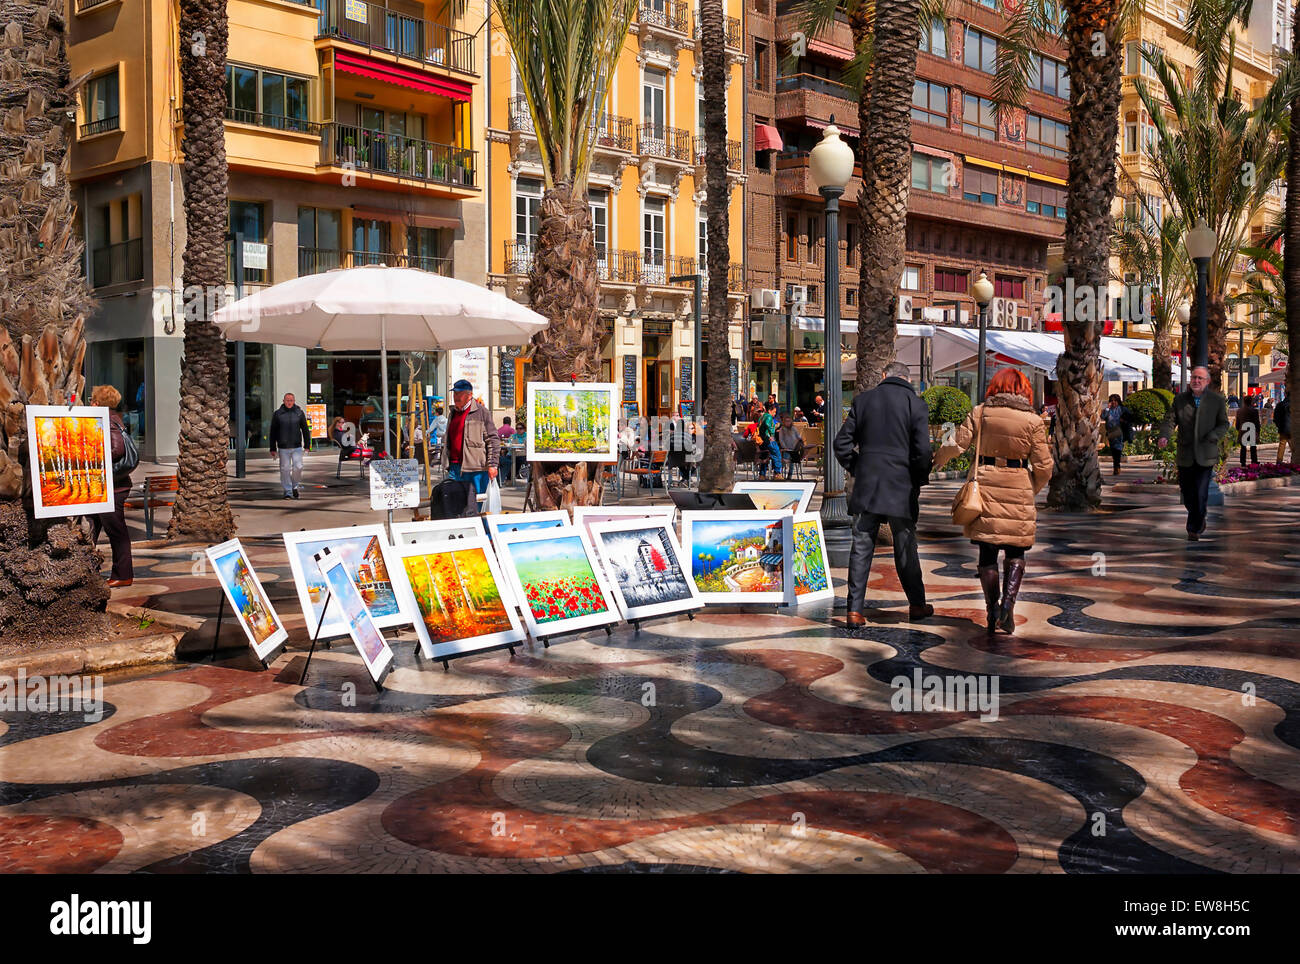 -Artists in promenade- Alicante (Spain). Stock Photo